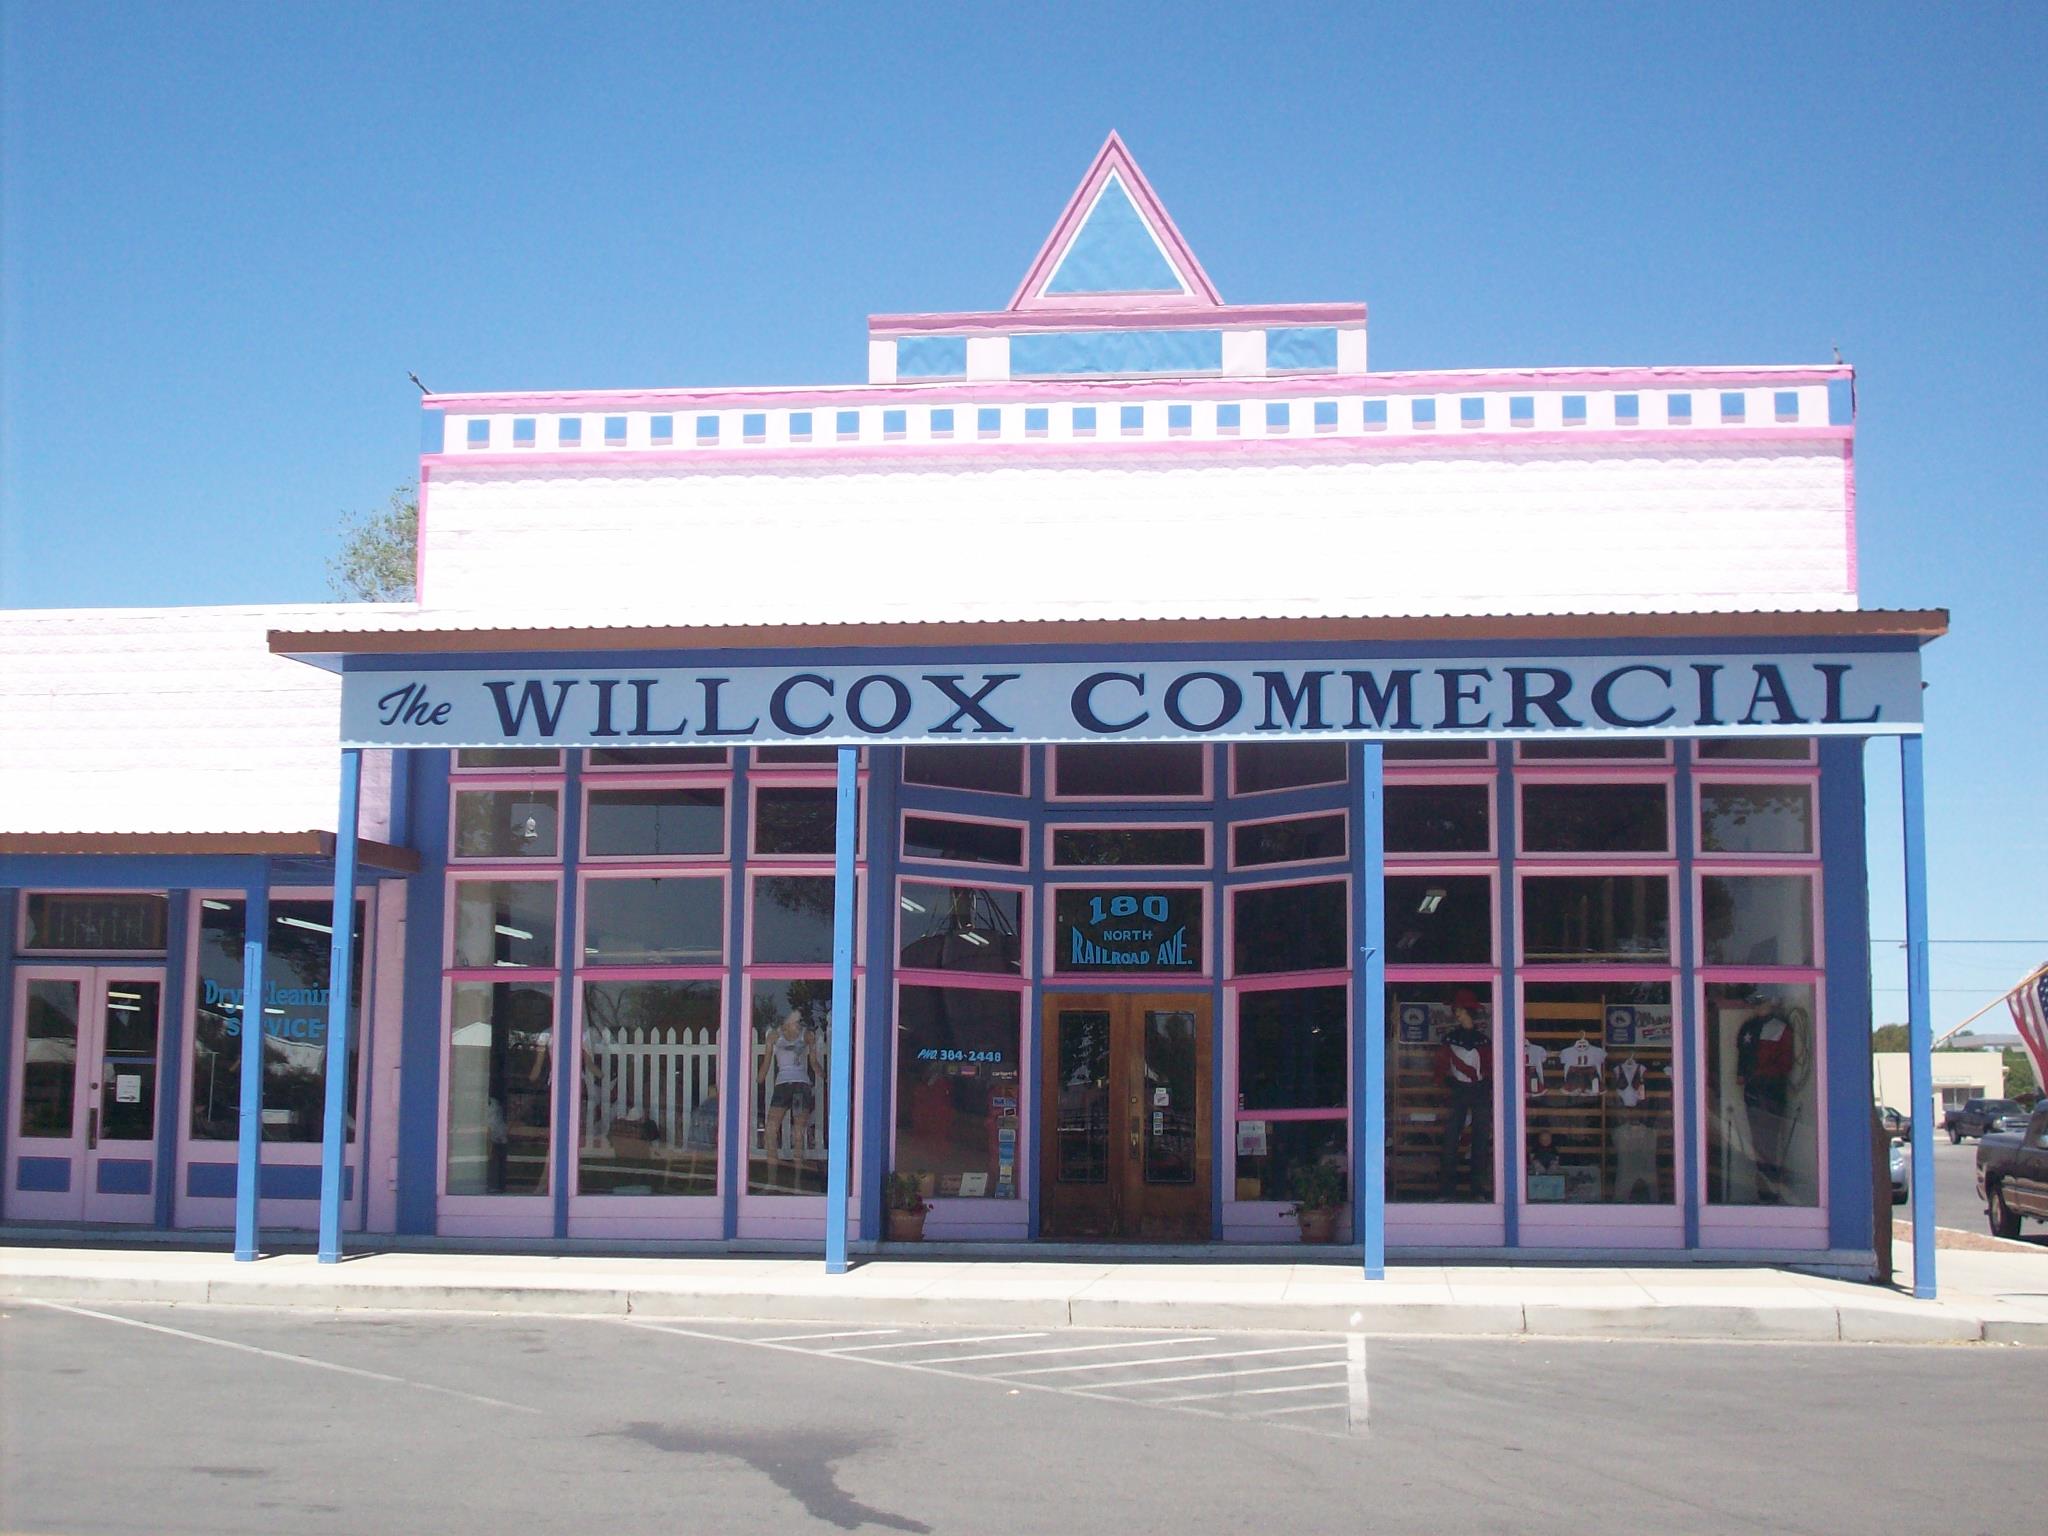 Willcox Commercial Co 180 Railroad Ave, Willcox Arizona 85643